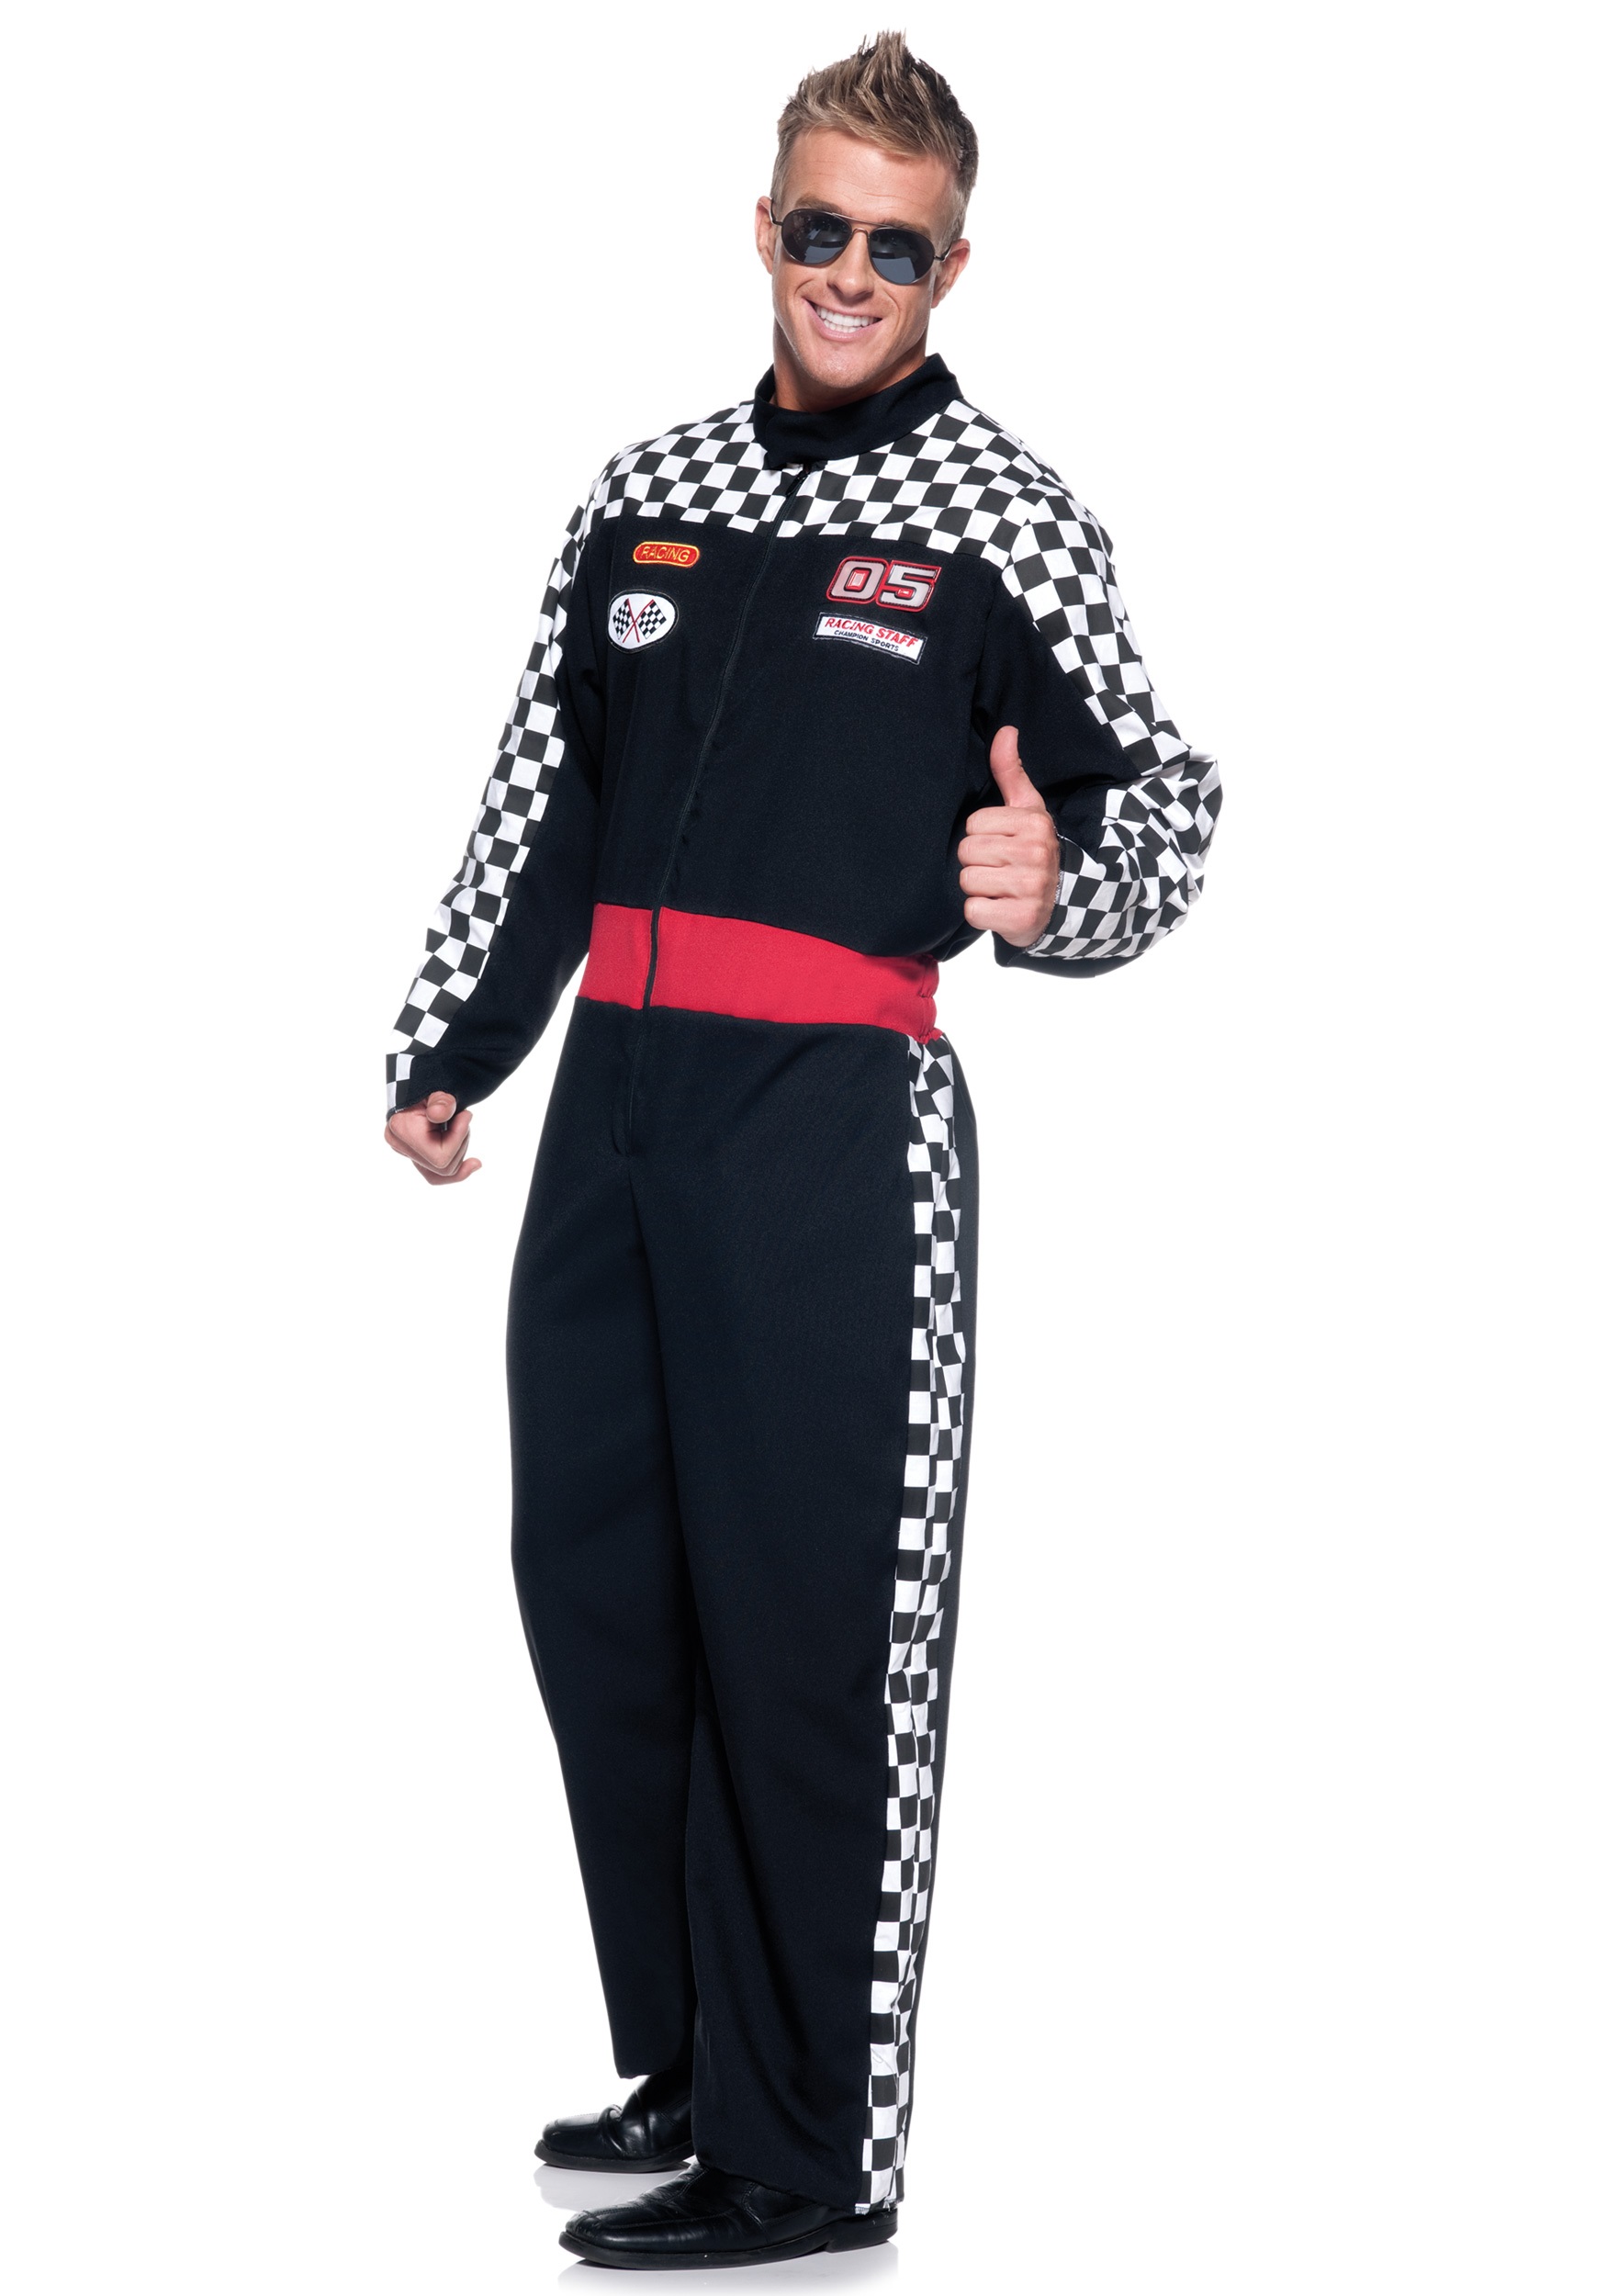 Plus Size Men's Race Car Driver Costume 2X